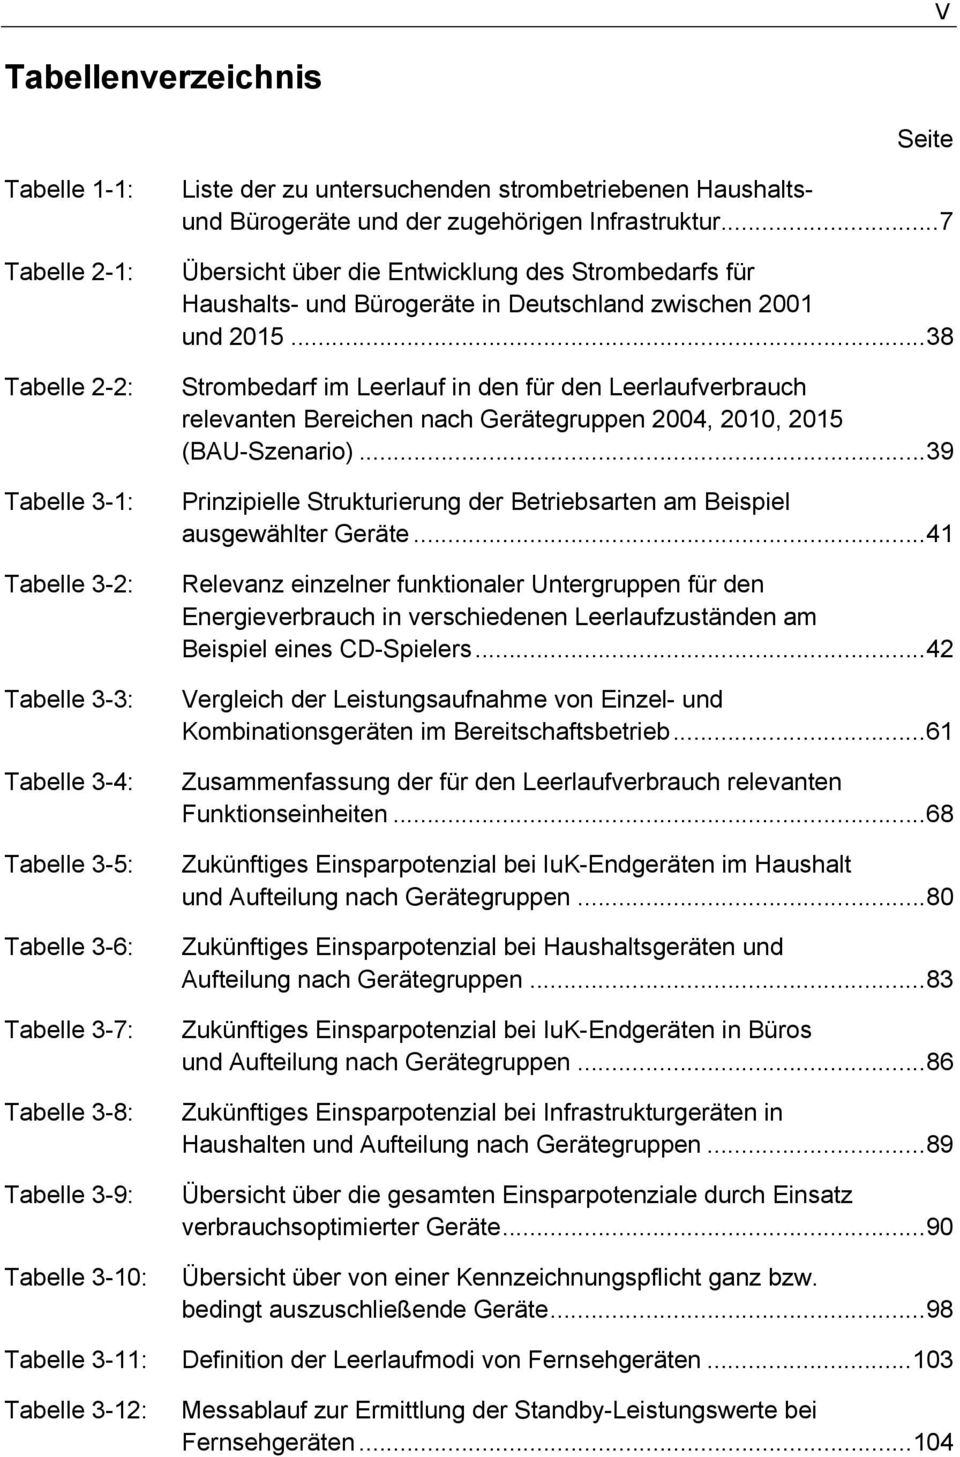 ..7 Übersicht über die Entwicklung des Strombedarfs für Haushalts- und Bürogeräte in Deutschland zwischen 2001 und 2015.